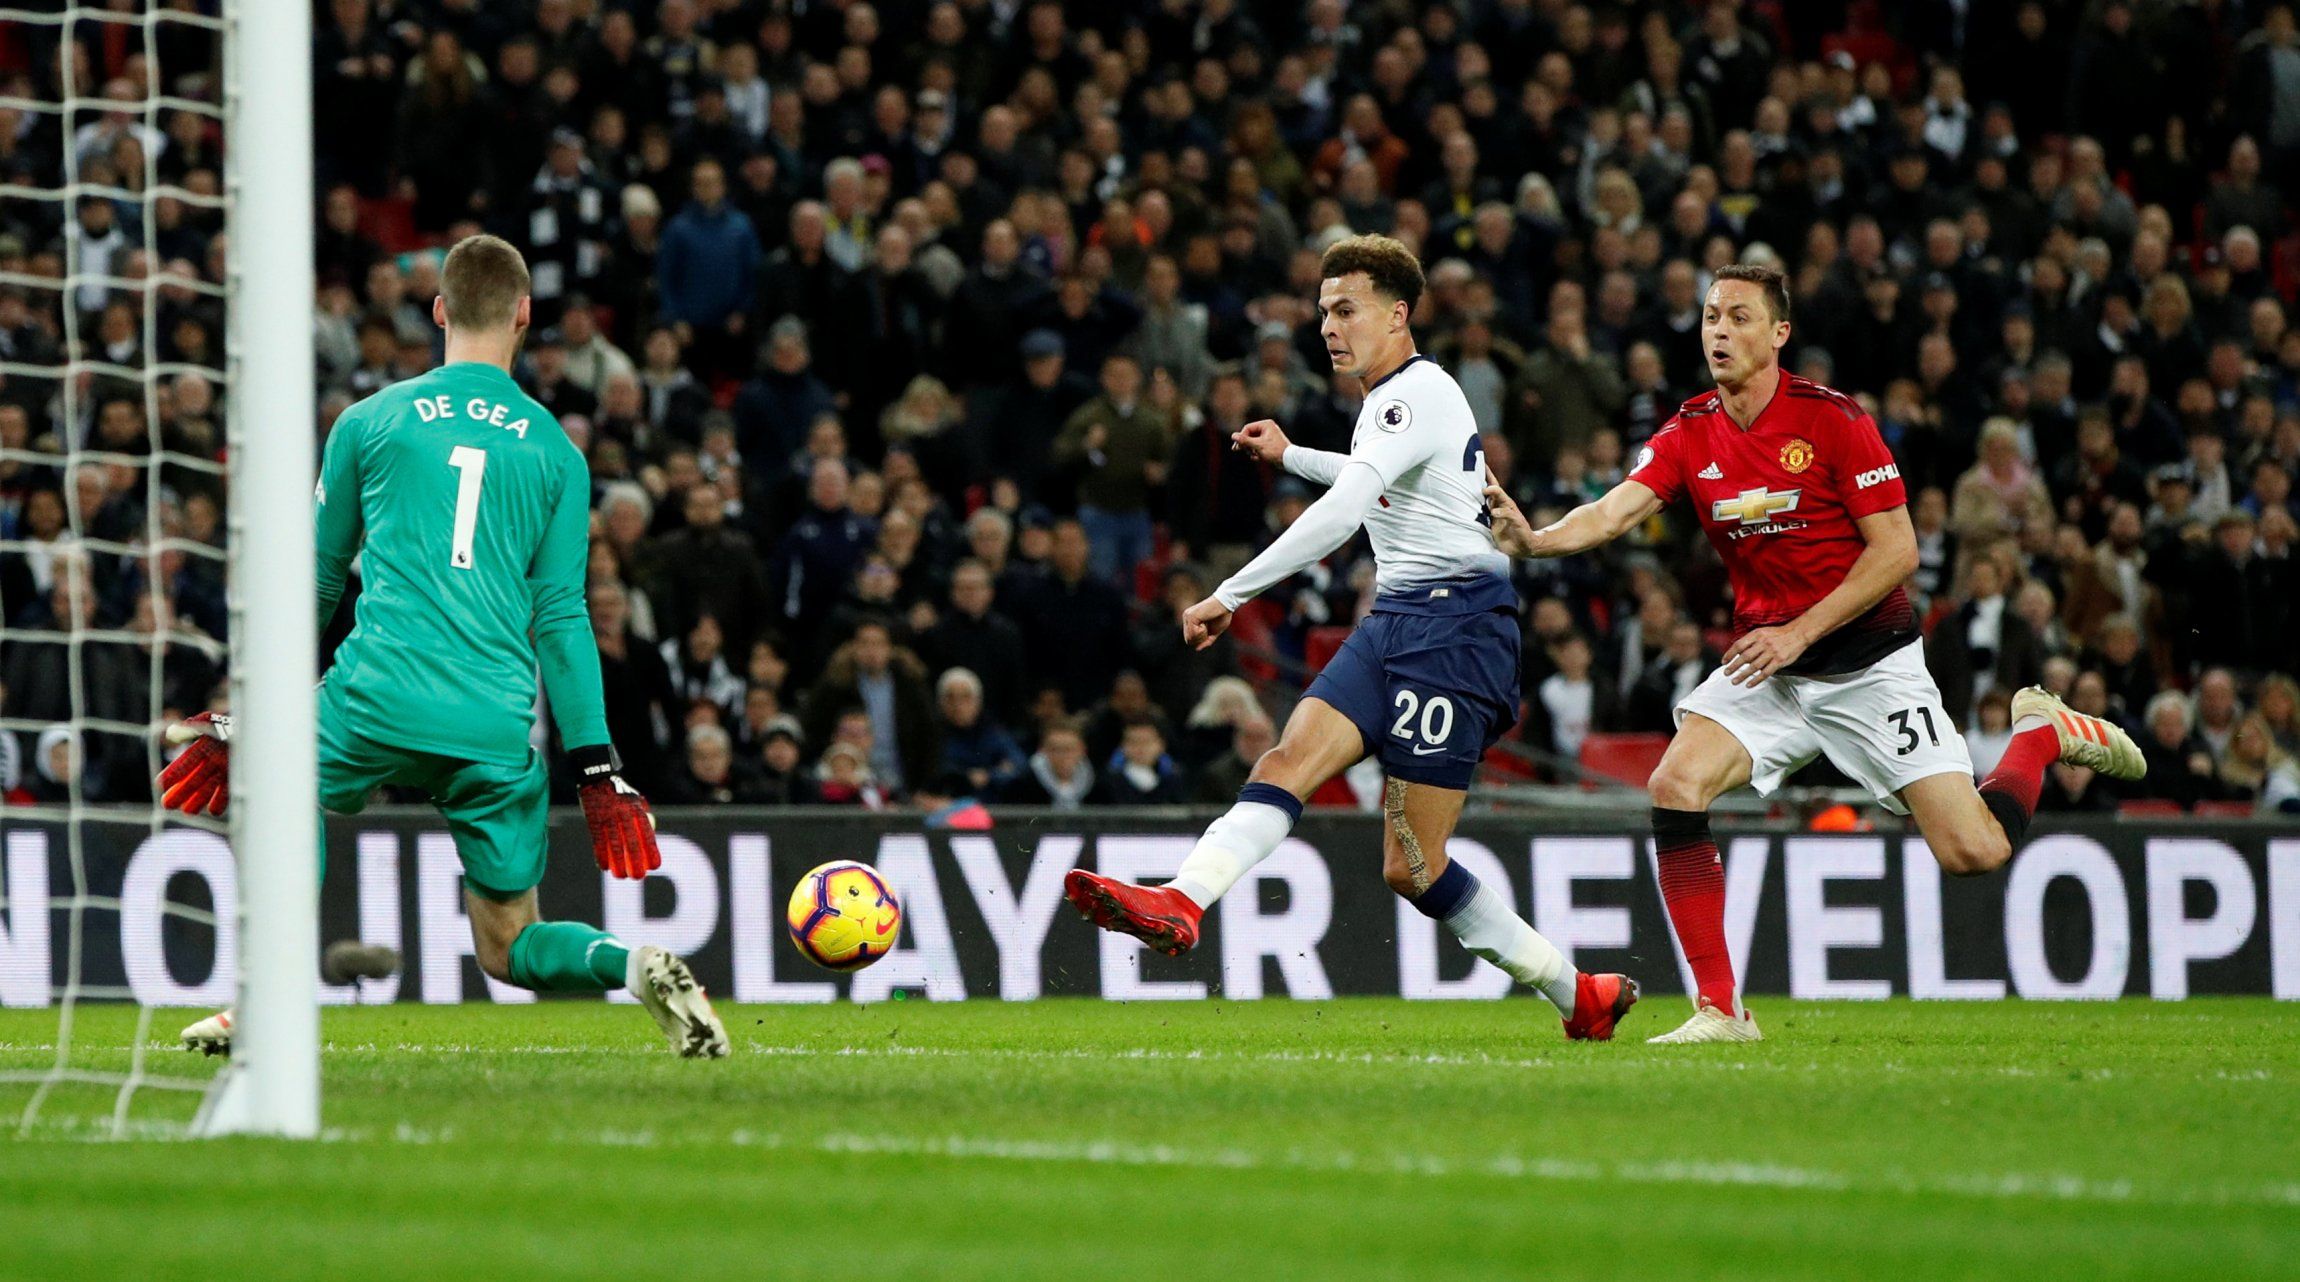 Manchester United's David de Gea makes a save from Tottenham's Dele Alli